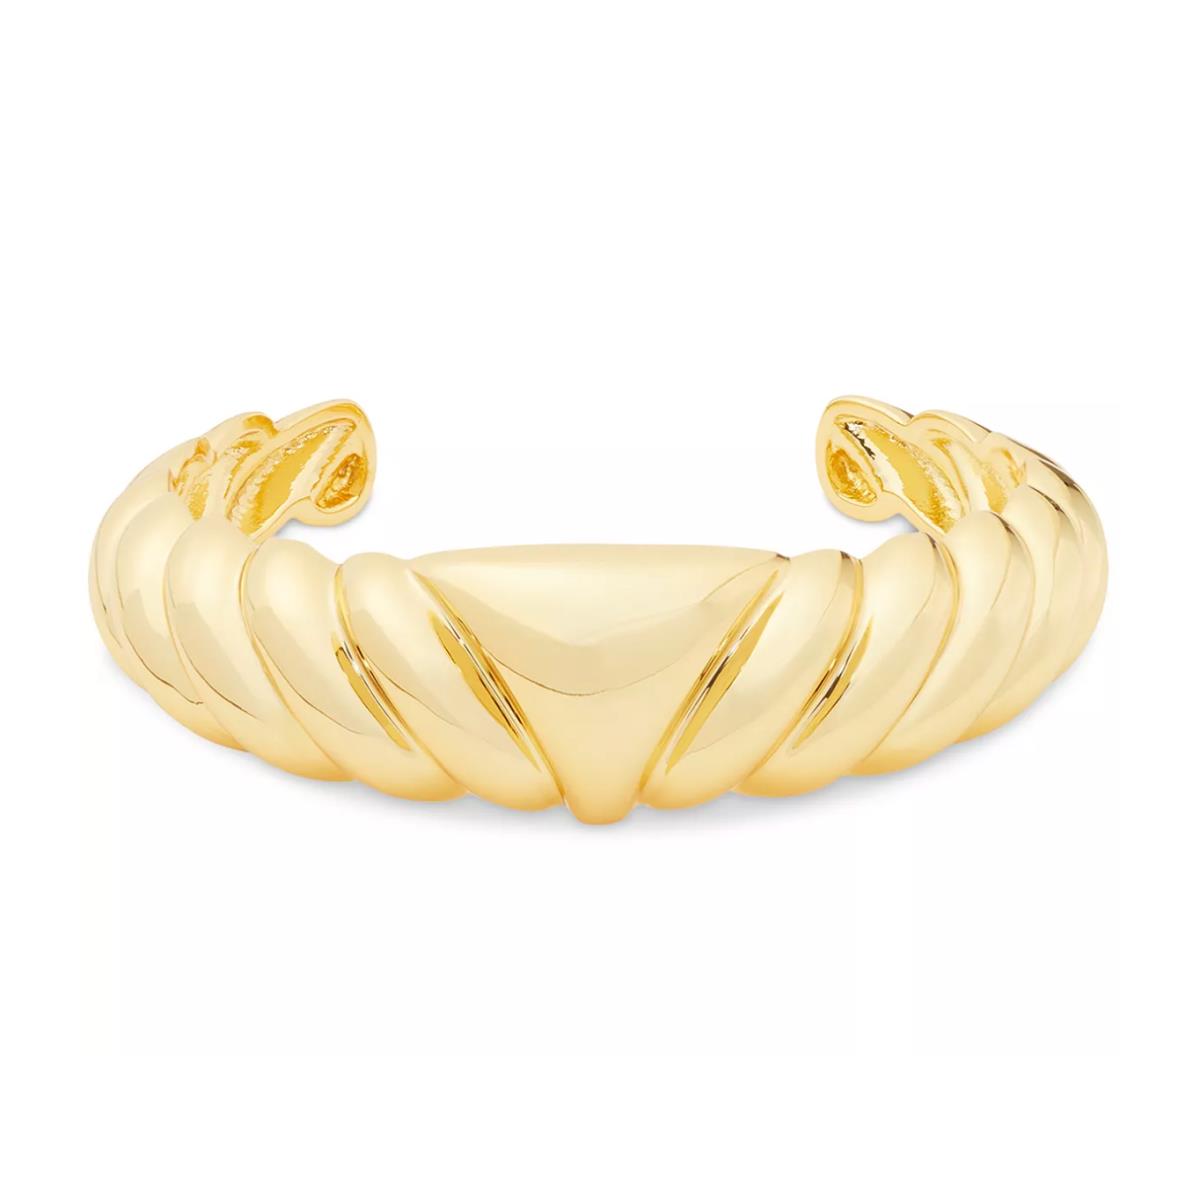 Kate Spade New York K9481 Gold-tone French Twist Cuff Bracelet 2 3/10 New